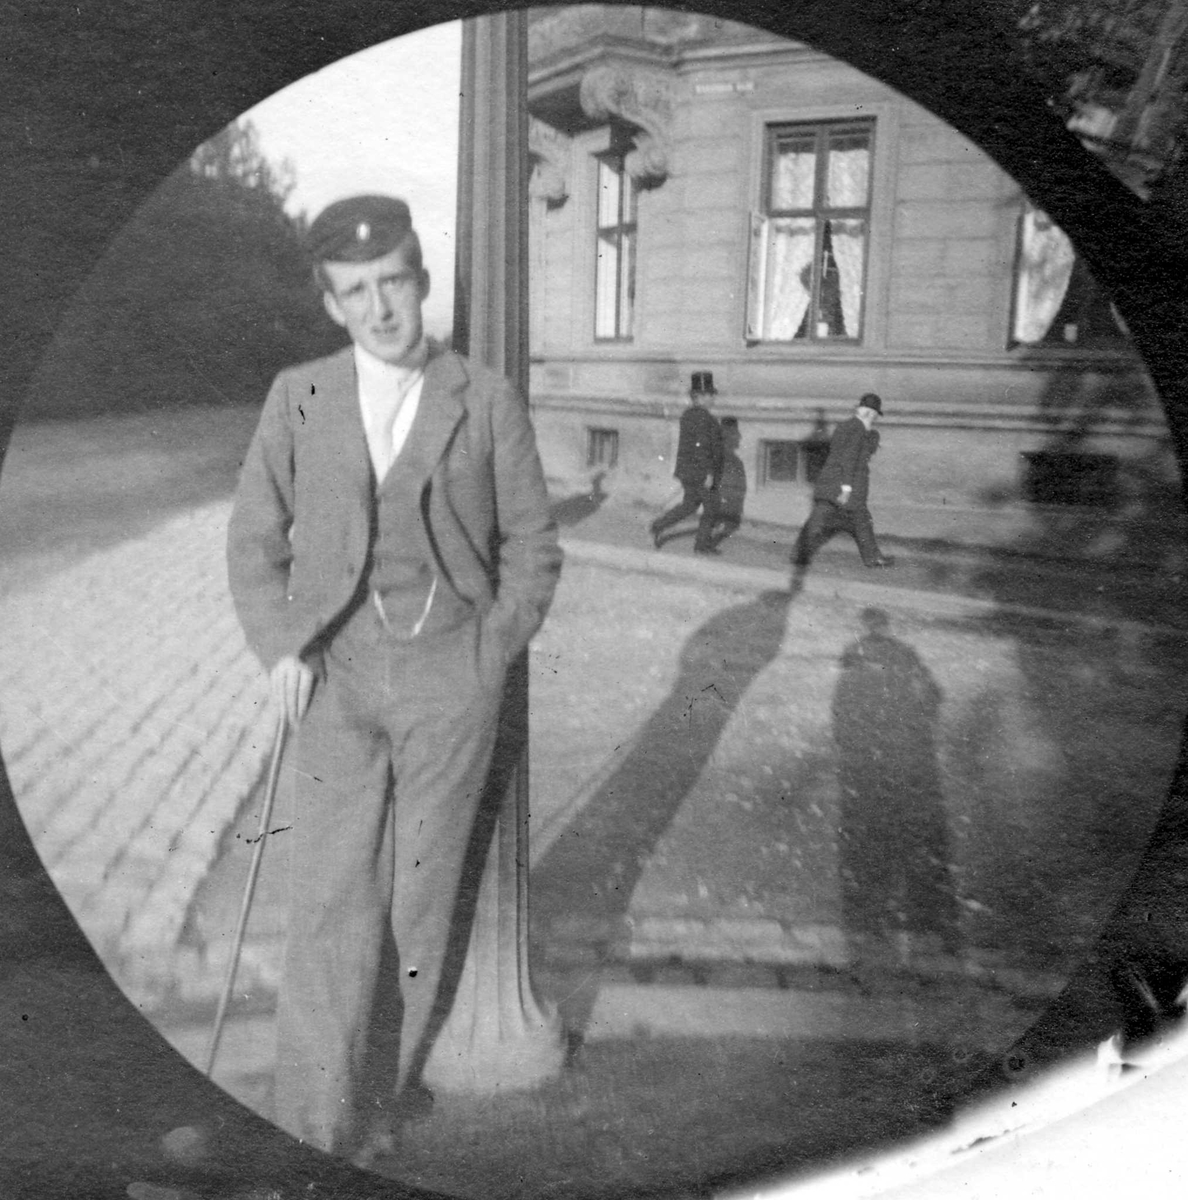 Student Bilten (?) Hiorthdal står lent mot lyktestolpe i gatekryss med bygård bak, Oslo. Student fra 1892.